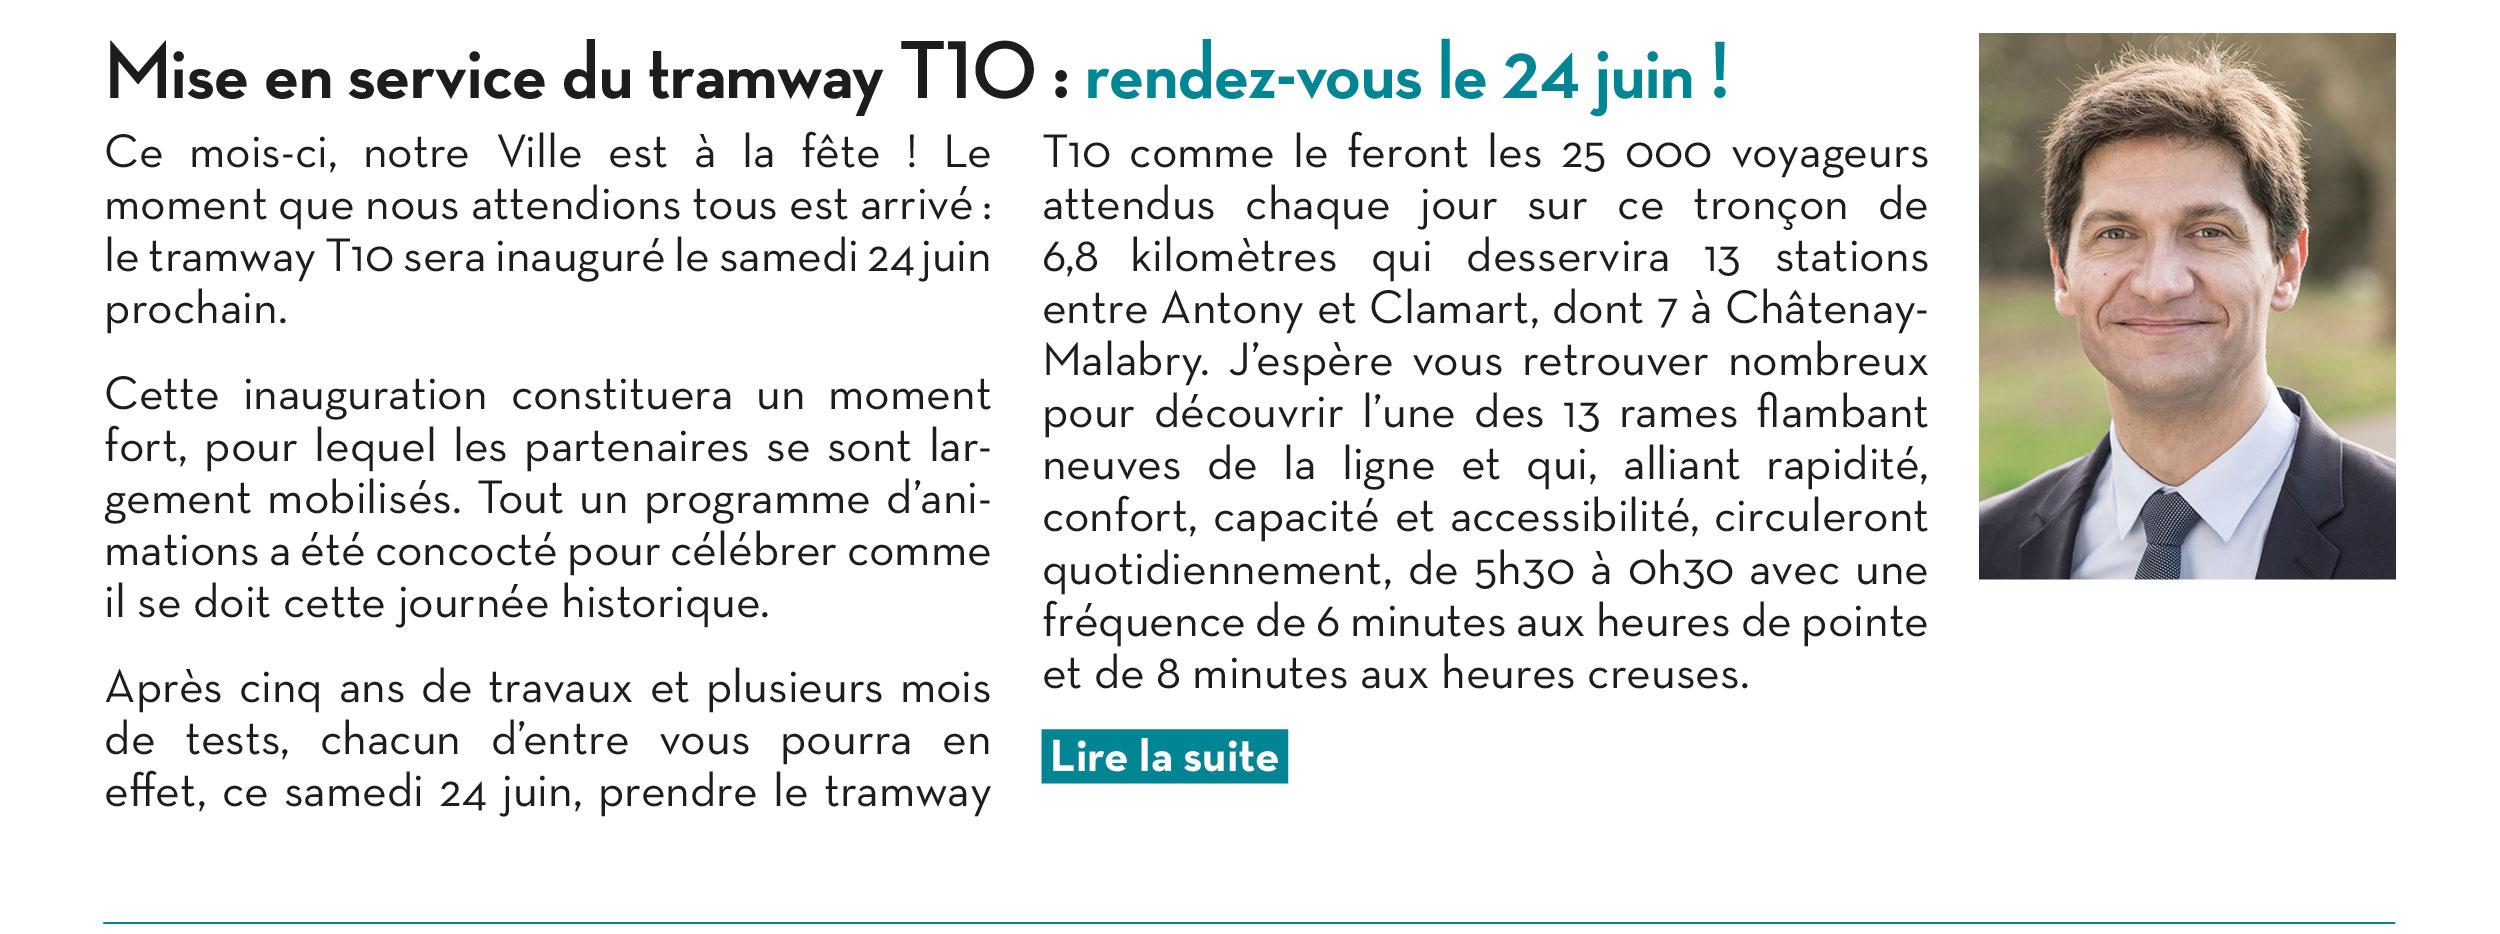 Mise en service du tramway T10 : rendez-vous le 24 juin !